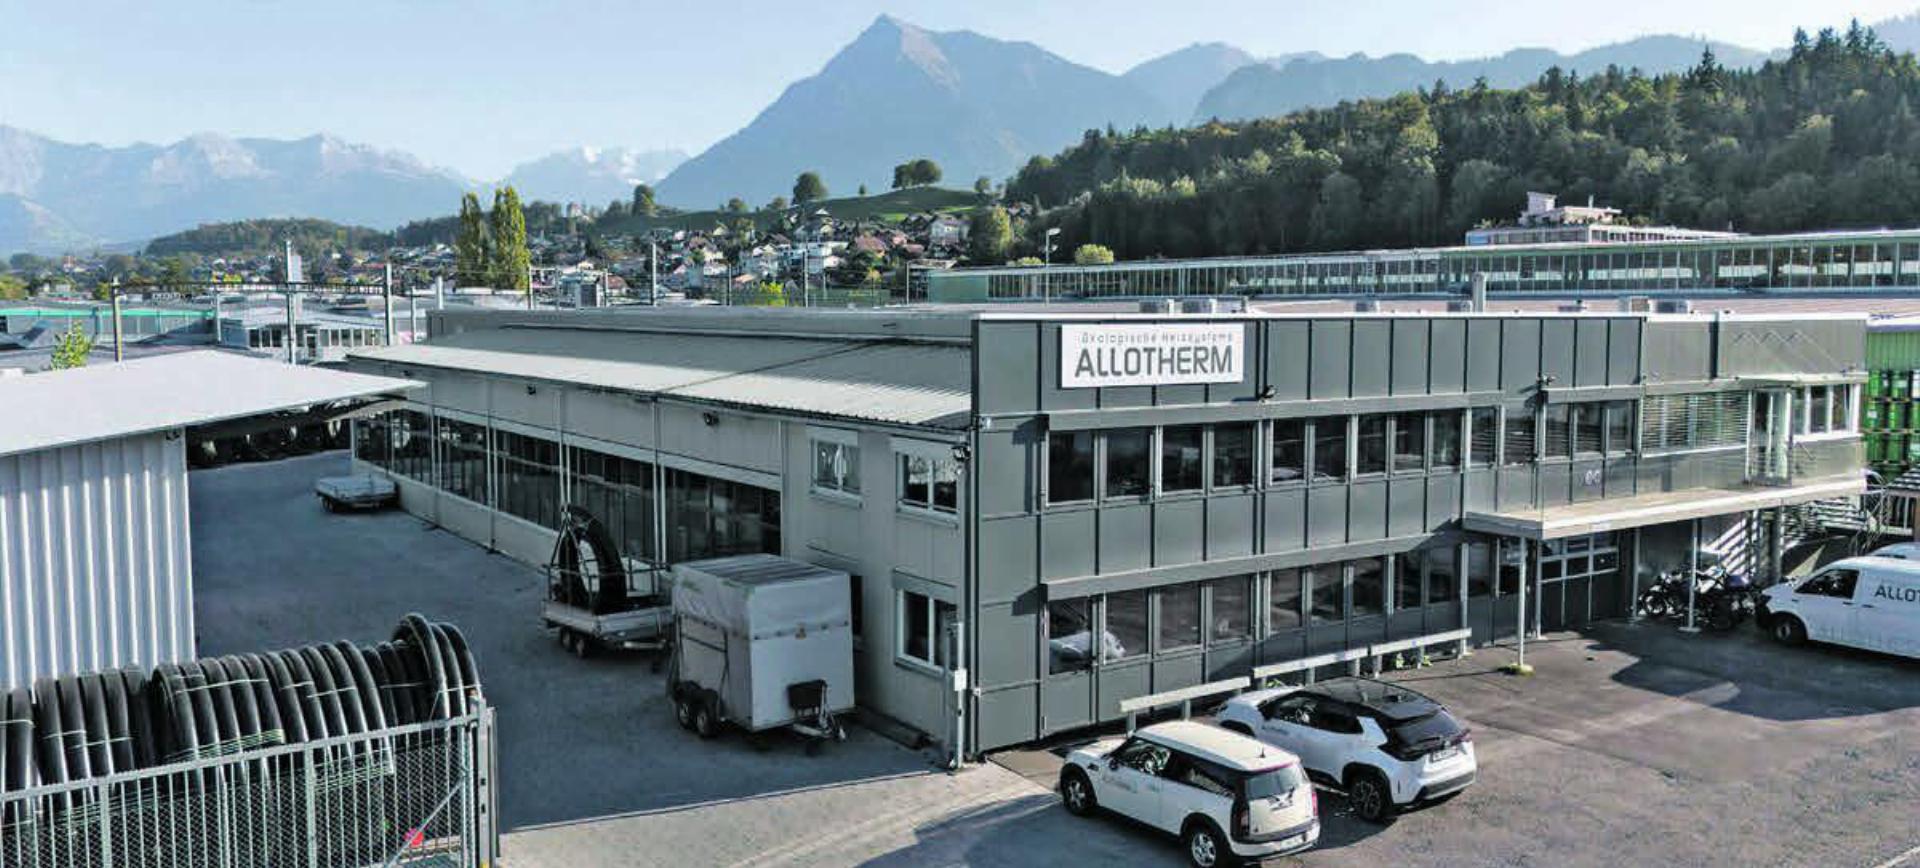 Hauptsitz in Gwatt. Die Allotherm hat weitere Standorte in Biel, Baselland sowie in der Zentral- und Ostschweiz. Bilder: zvg